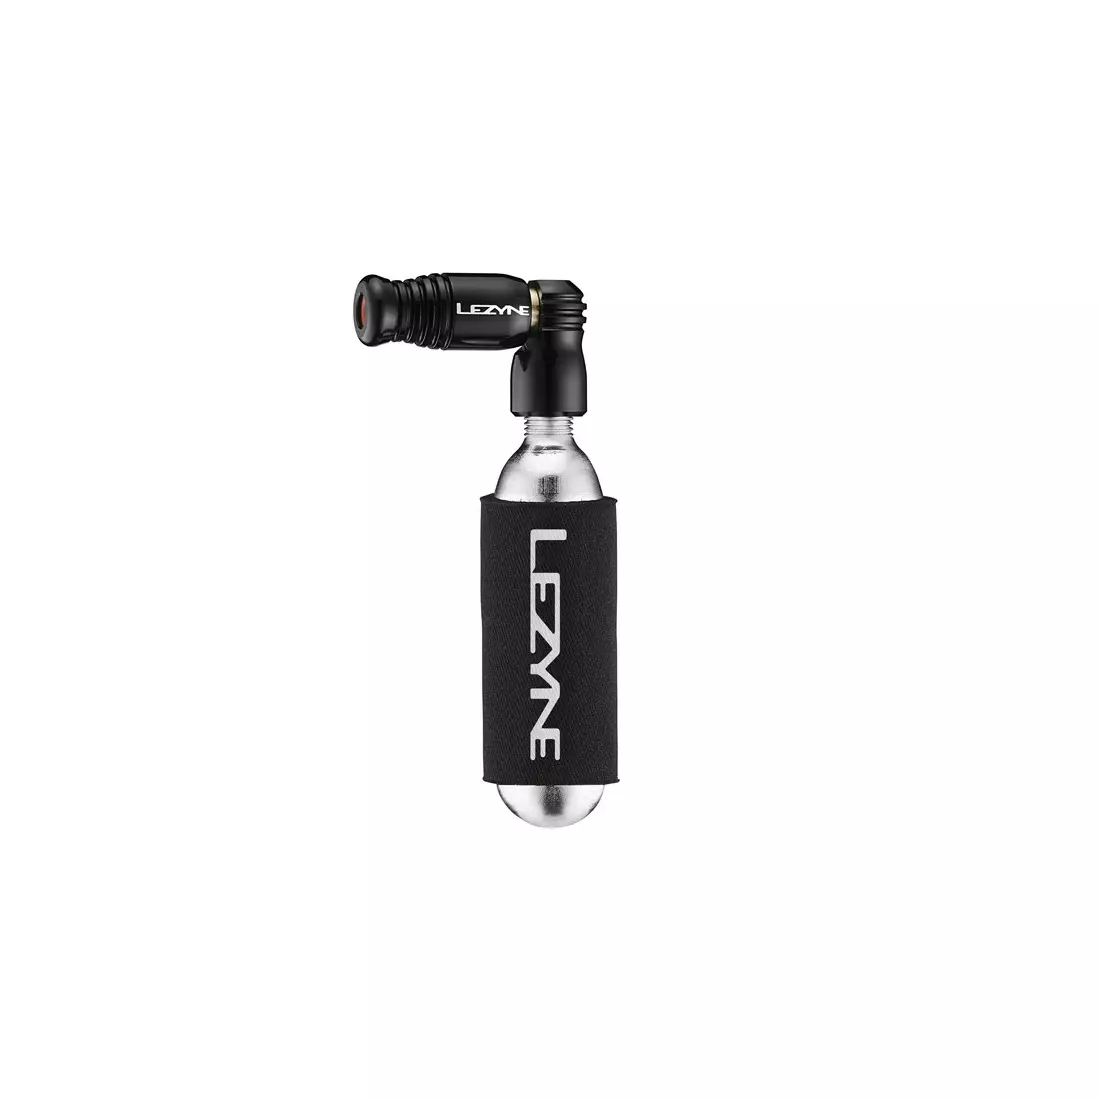 LEZYNE ručné čerpadlo na bicykel trigger speed drive co2 + 16 g plynová náplň, čierna LZN-1-C2-TRSDR-V104